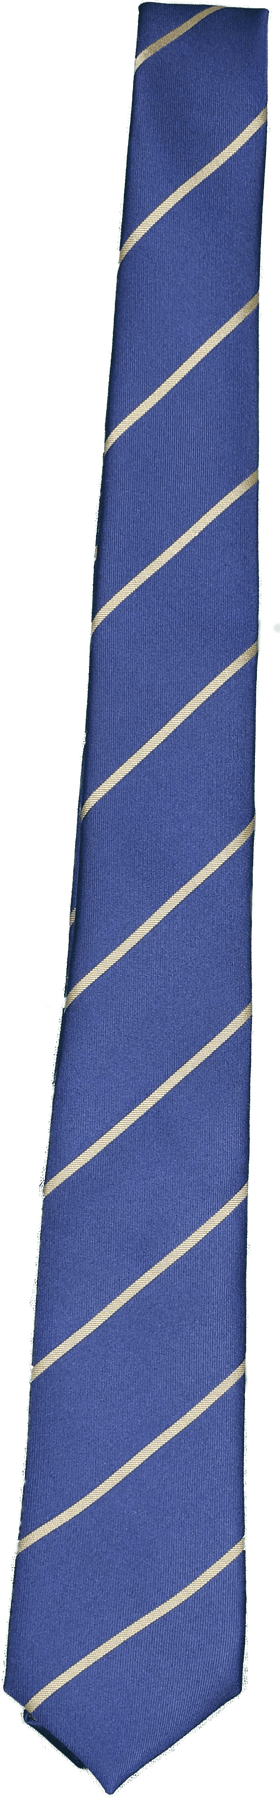 Bhoomi School Tie for Kids